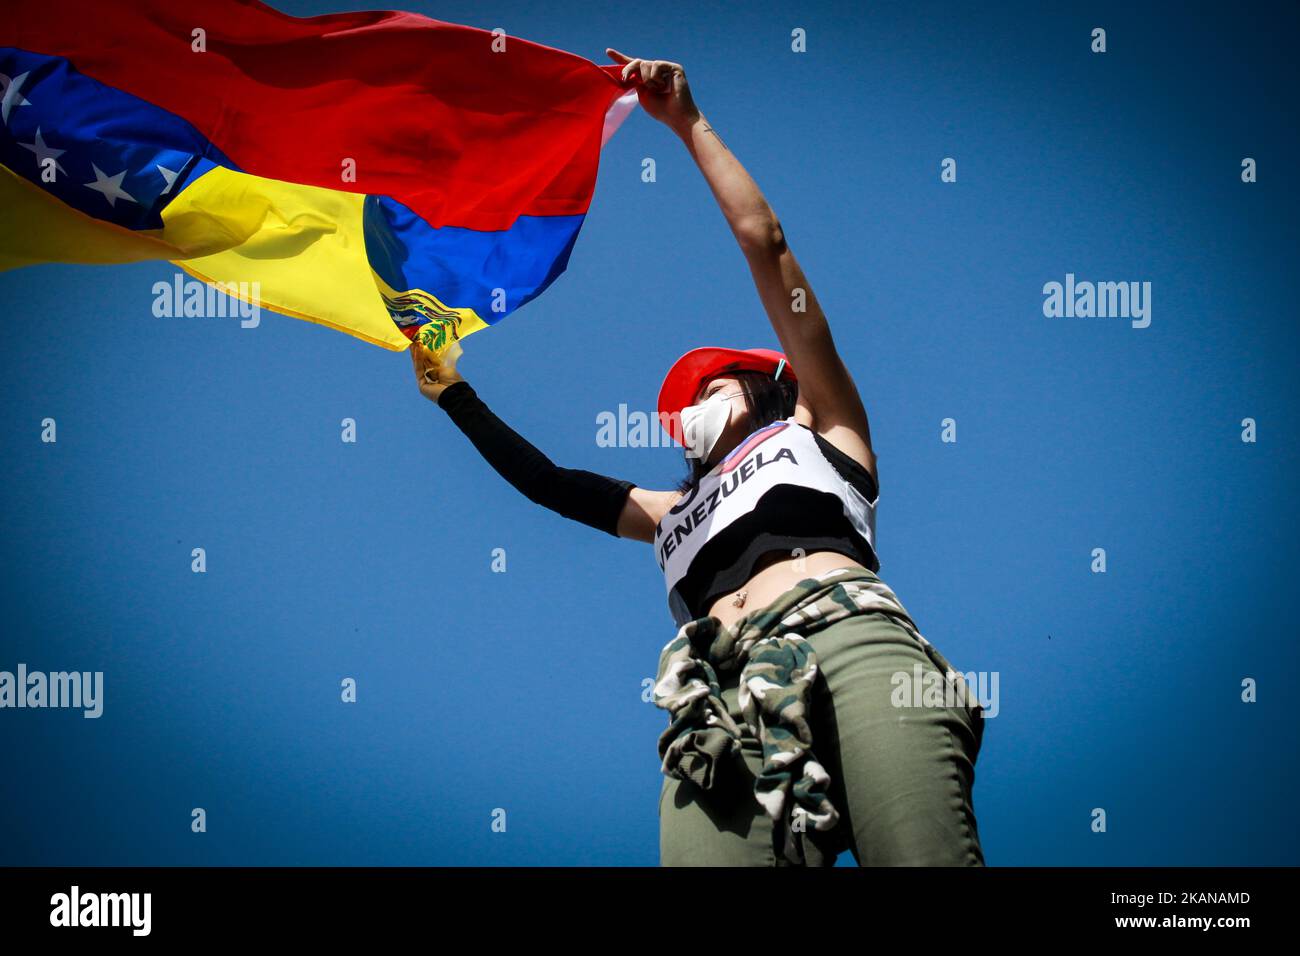 Ein Oppositionsaktivistin schwenkt während der Zusammenstöße mit der Bereitschaftspolizei während einer Demonstration gegen den venezolanischen Präsidenten Nicolas Maduro am 26. Mai 2017 in Caracas eine venezolanische Nationalflagge. Sowohl die venezolanische Regierung als auch die Opposition geben zu, dass gewalttätige Proteste, die das Land seit fast zwei Monaten ergriffen haben, außer Kontrolle geraten sind - und Analysten warnen, dass sie ein zweischneidiges Schwert sein könnten, das noch mehr Unruhen auslösen könnte. (Foto von Elyxandro Cegarra/NurPhoto) *** Bitte nutzen Sie die Gutschrift aus dem Kreditfeld *** Stockfoto